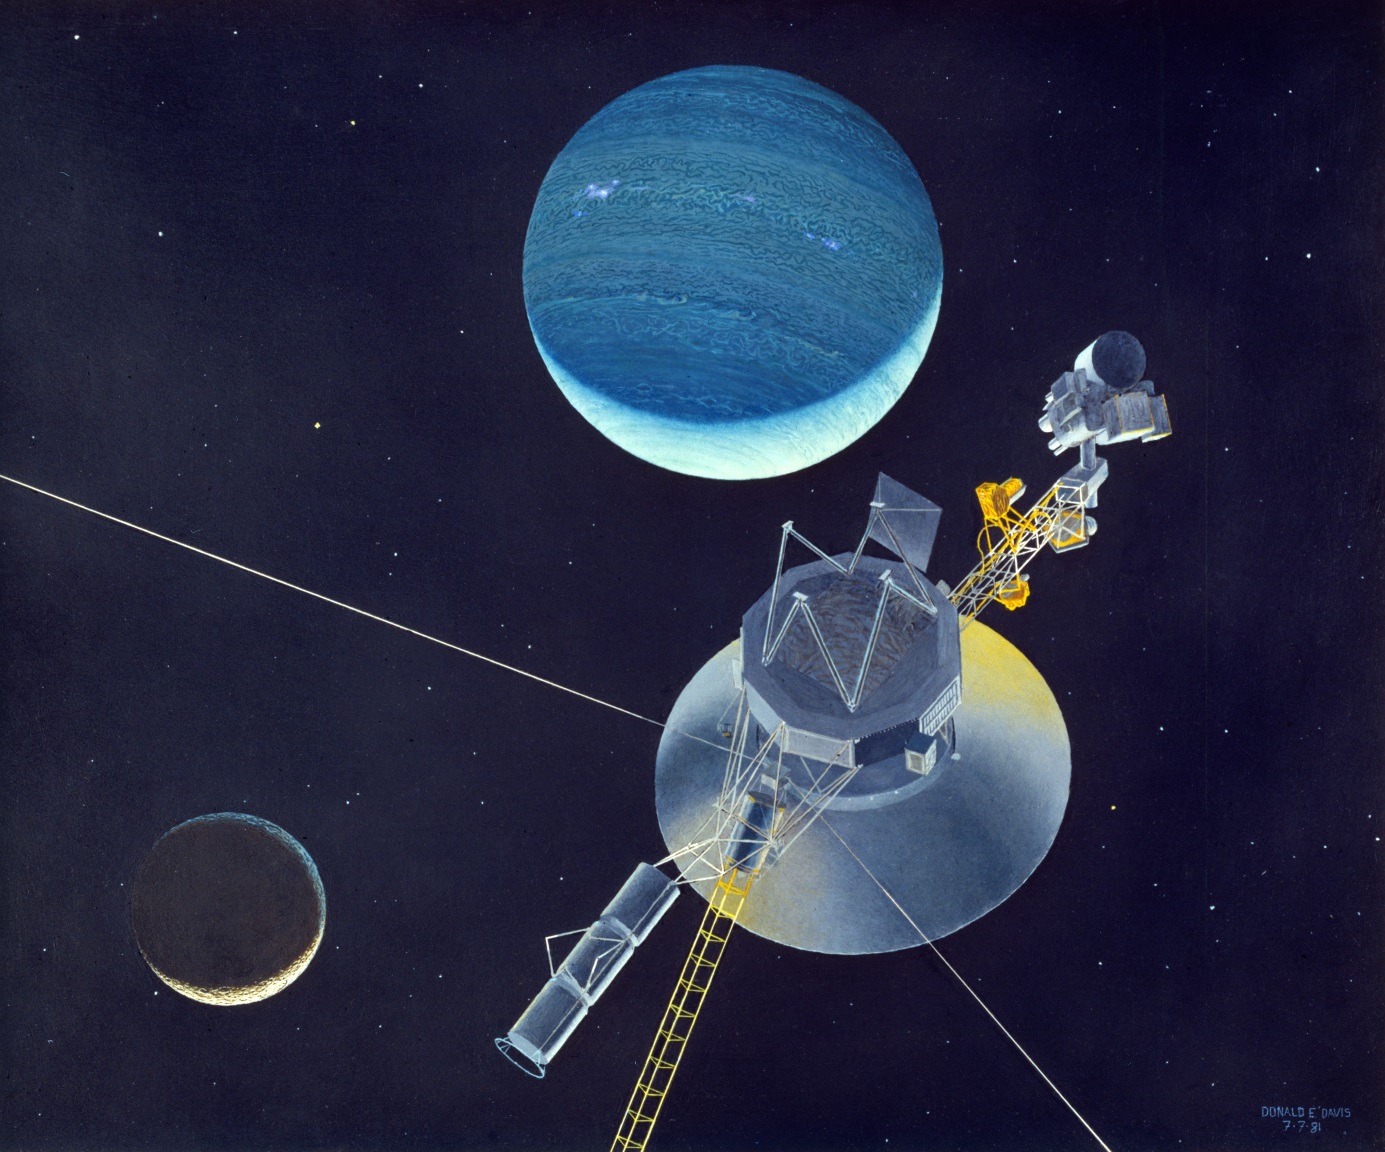 Sonda Voyager 2 dĂ­ky gravitaÄŤnĂ­m manĂ©vrĹŻm proletÄ›la kolem vĹˇech velkĂ˝ch planet a dostala se aĹľ k Neptunu. NynĂ­ je v ÄŤele pelotonu pÄ›ti pozemskĂ˝ch sond k okraji SluneÄŤnĂ­ soustavy (zdroj NASA).